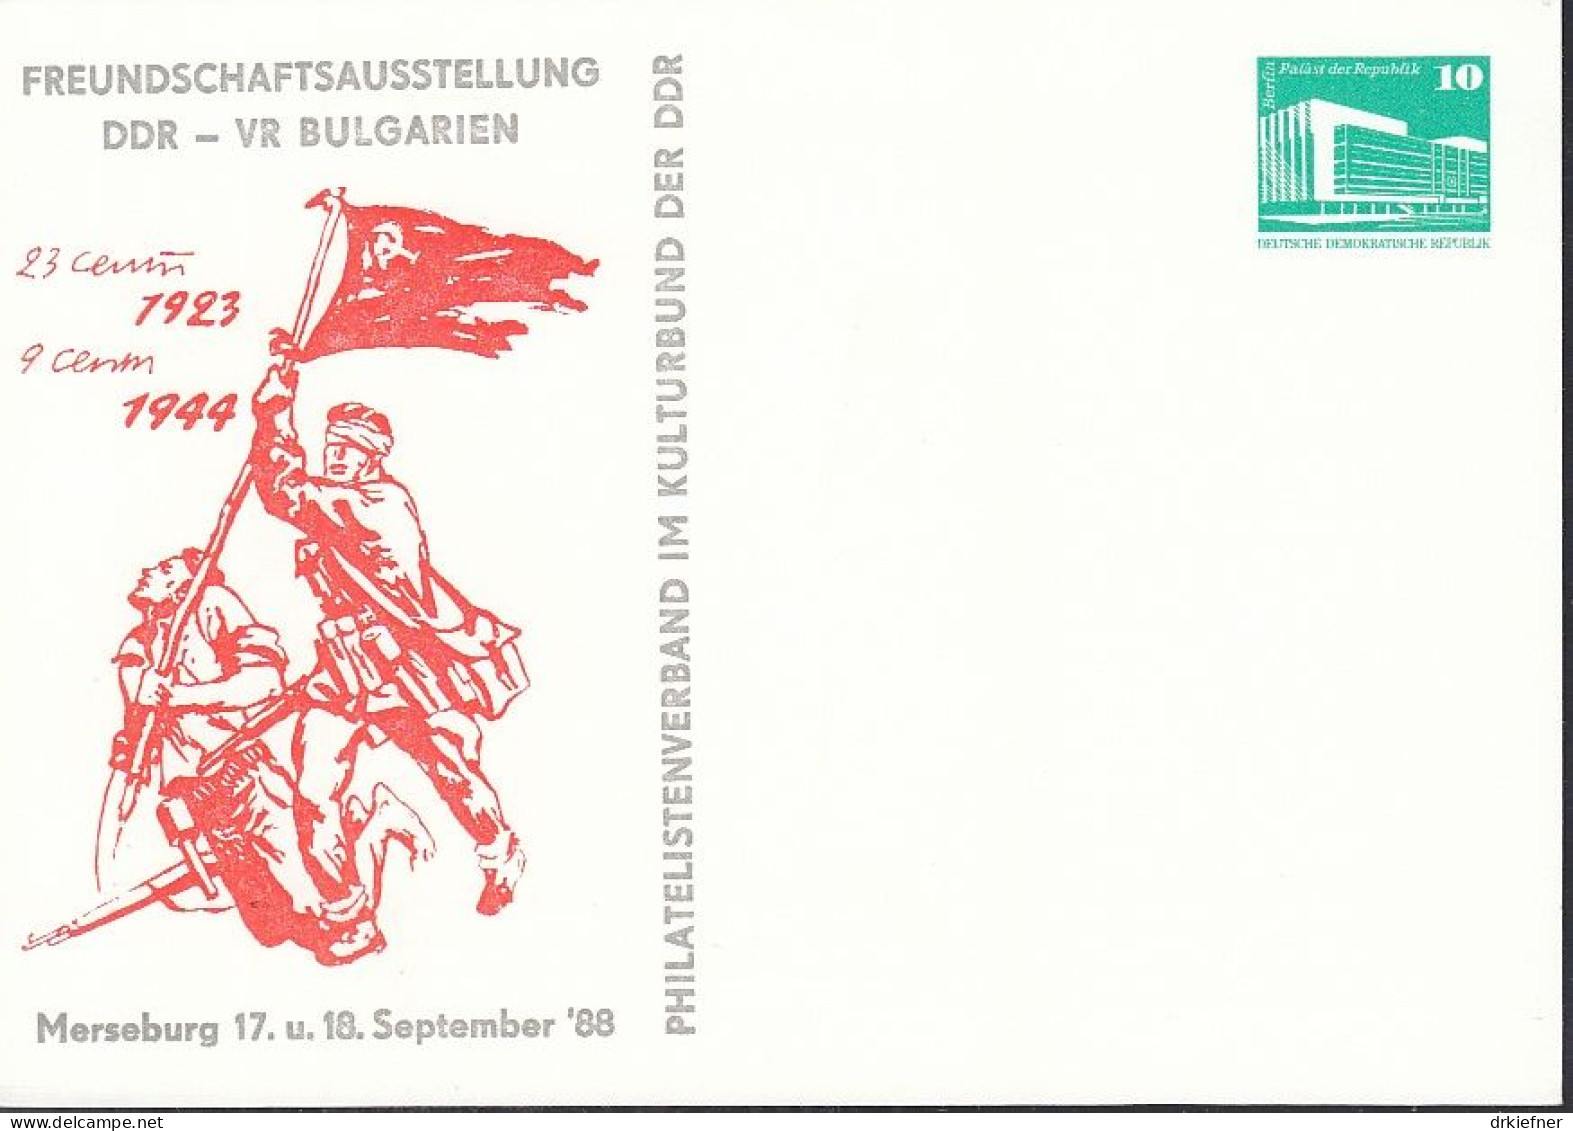 DDR PP 18, Ungebraucht, Freundschaftsausstellung DDR-Bulgarien Merseburg 1988 - Private Postcards - Mint